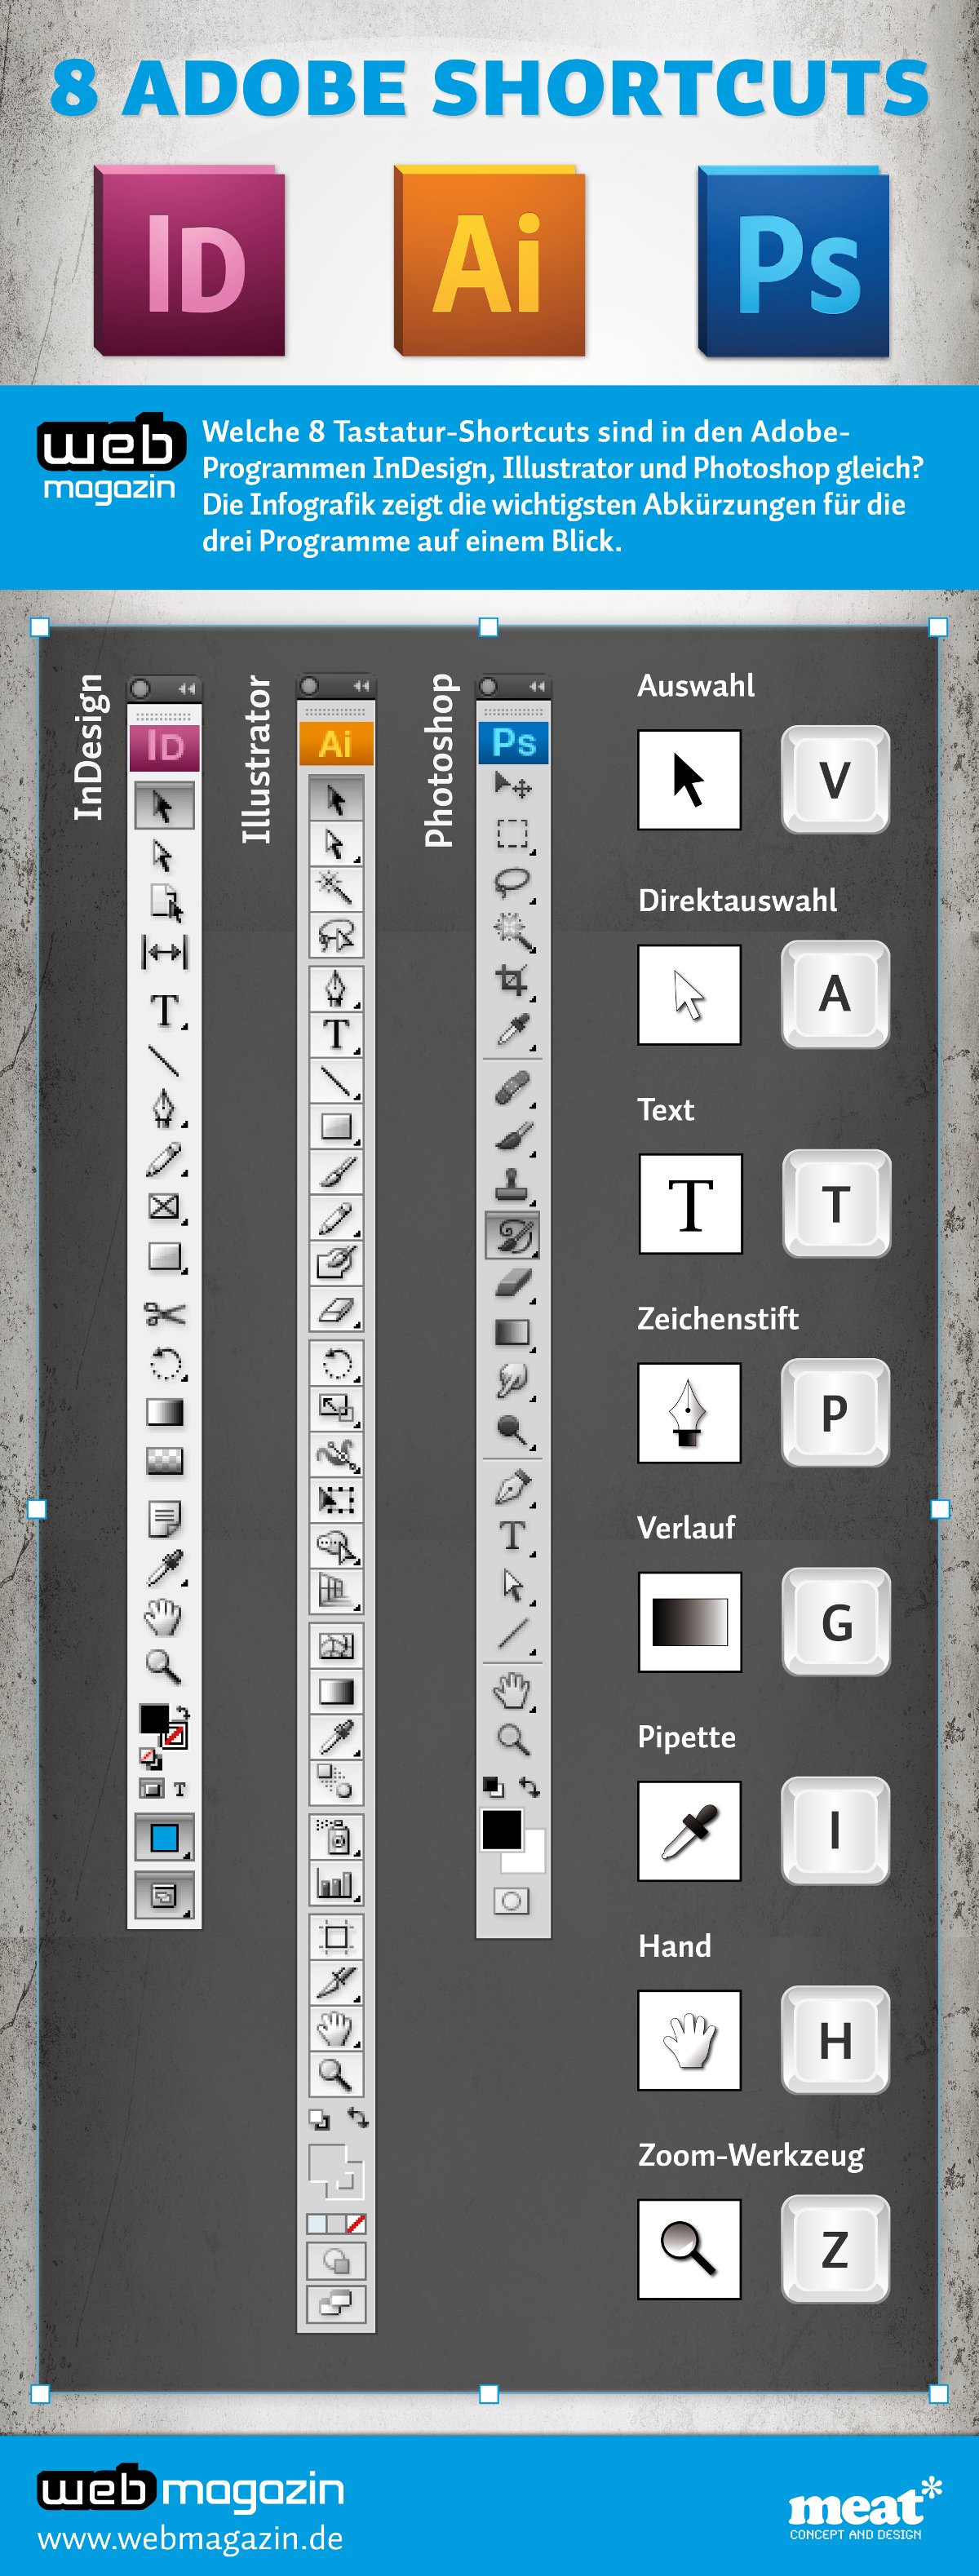 Gemeinsame Shortcuts für Adobe InDesign, Illustrator und Photoshop